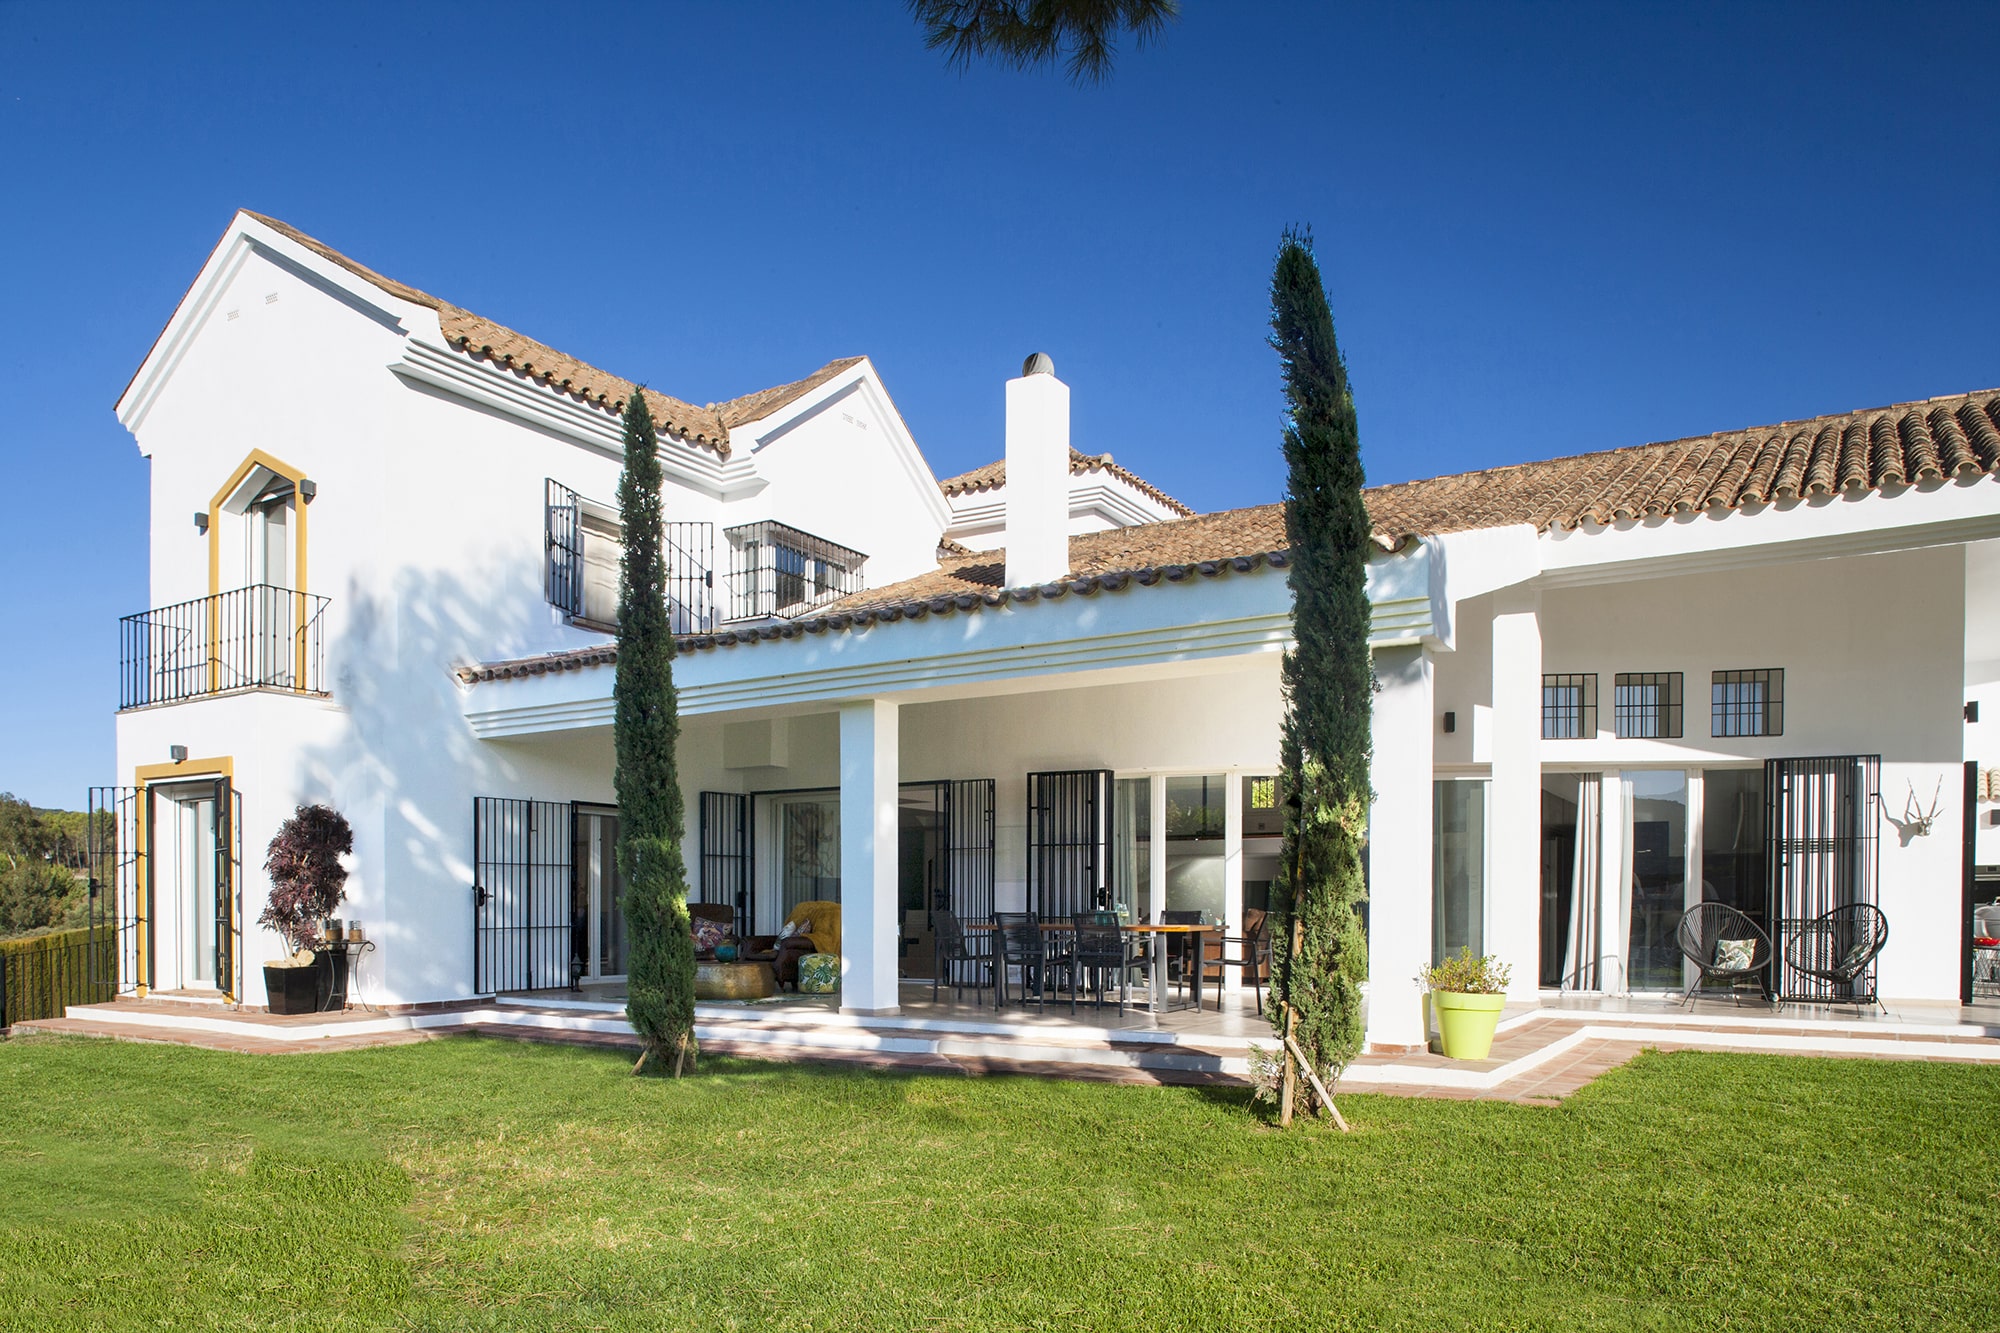 villas andalucia facade and pool